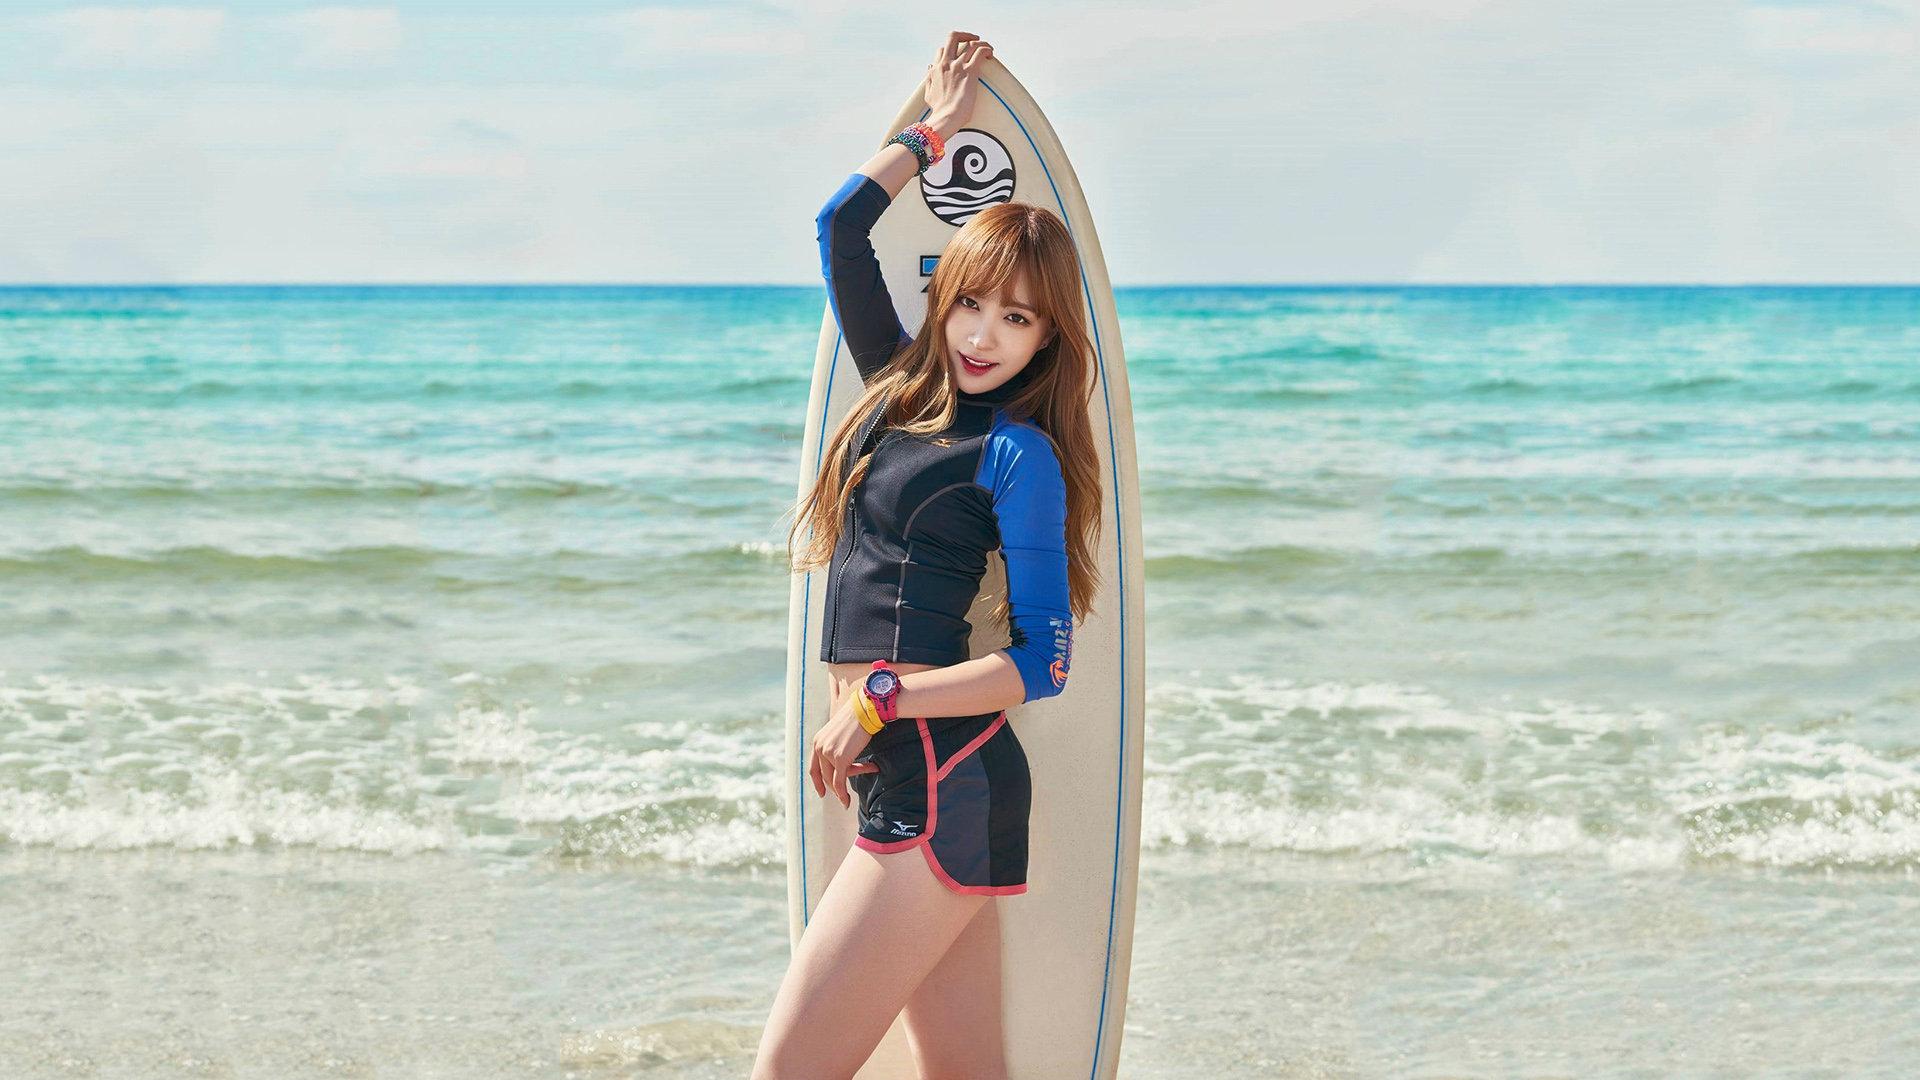 Women Model Asian Beach Waves Surfboards Redhead Sportwear Surfers Smiling Hani EXiD K Pop 1920x1080